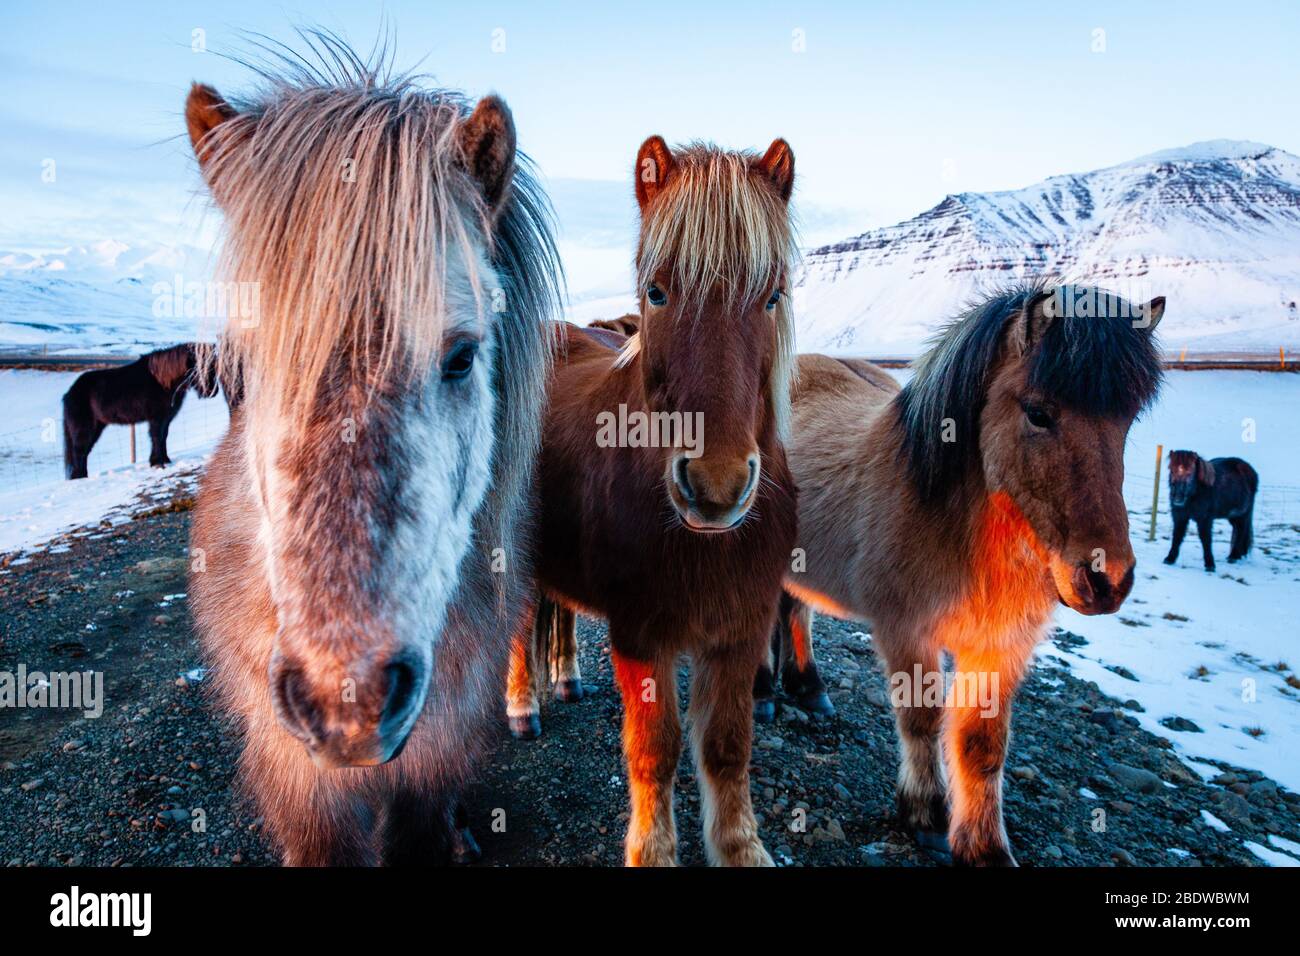 Close up portrait of three Icelandic horses (Equus ferus caballus) at sunset in snowy Icelandic landscape, Iceland Stock Photo